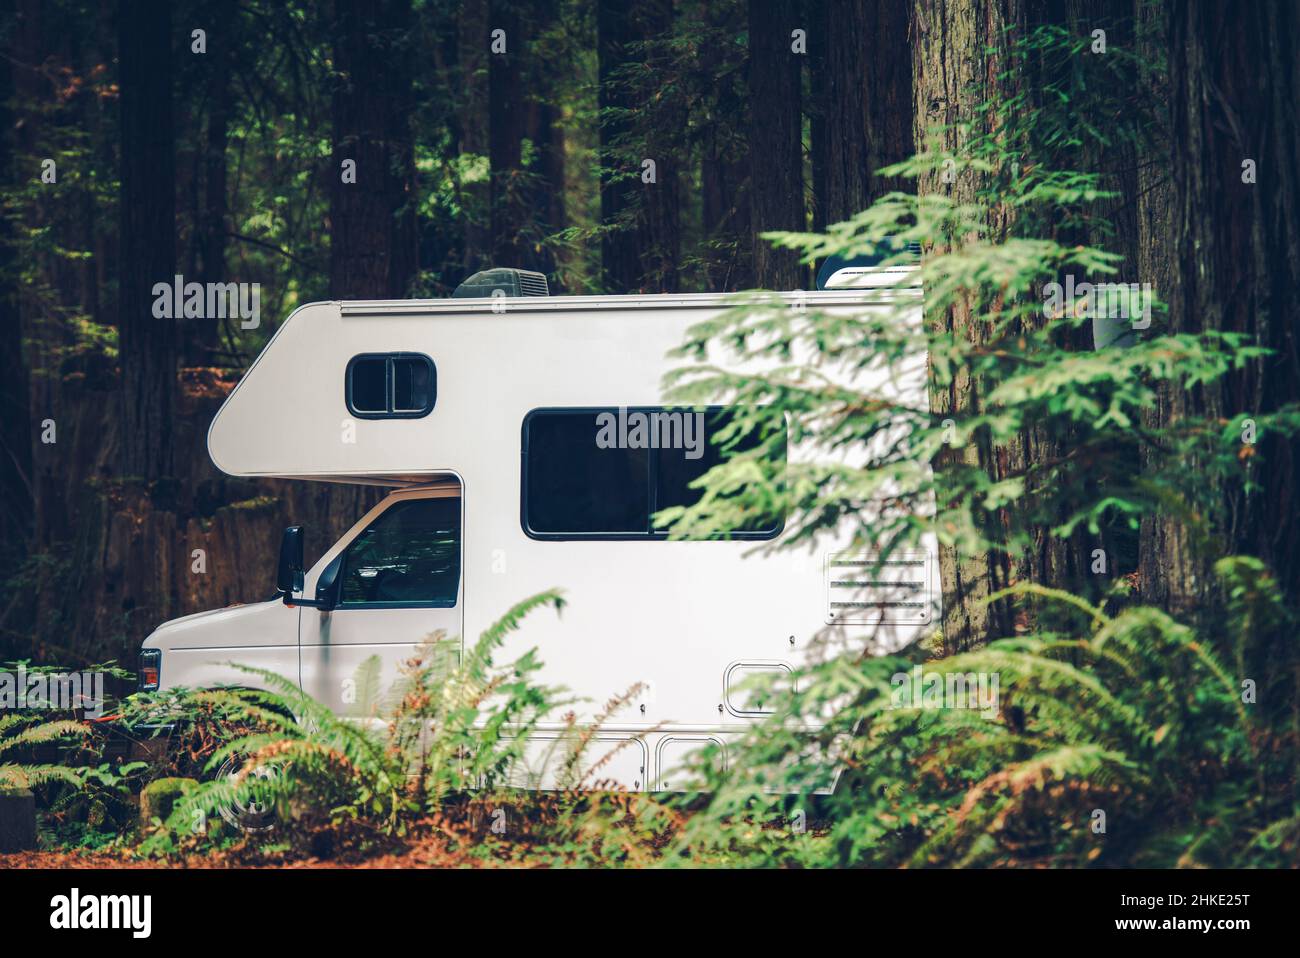 Lit superposé moderne classe C Camping camping-car Camping camping-car en camping-car dans la forêt de séquoias du nord de la Californie, États-Unis d'Amérique Banque D'Images